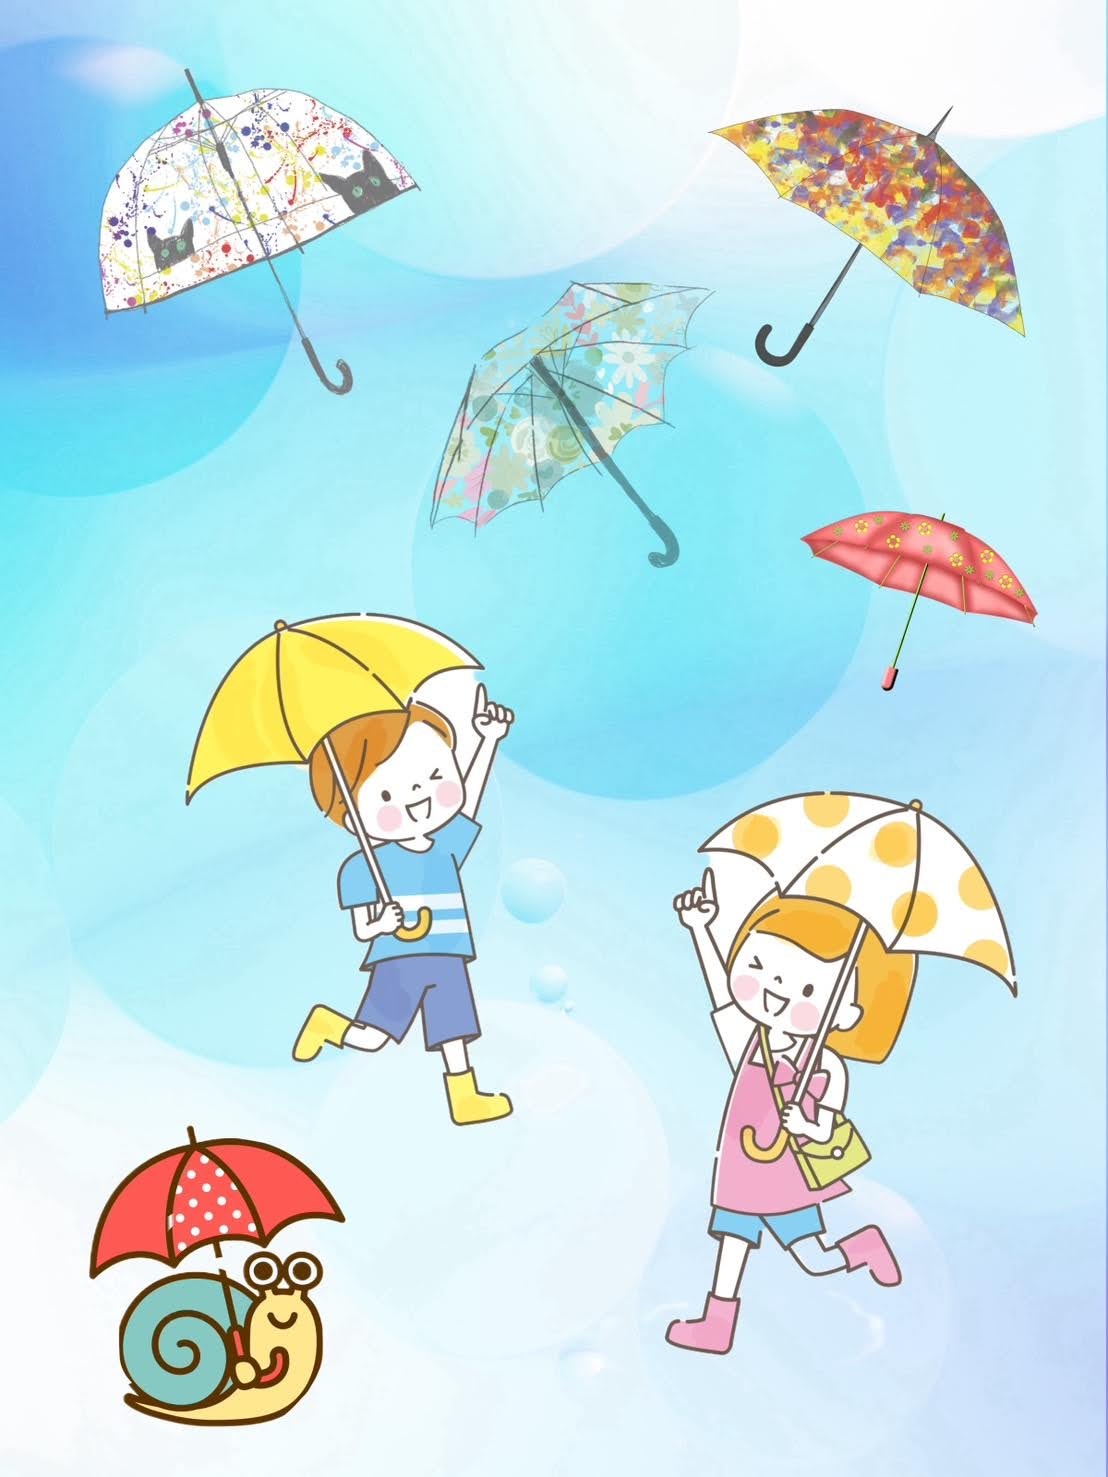 世界にひとつの傘をつくろう！の写真